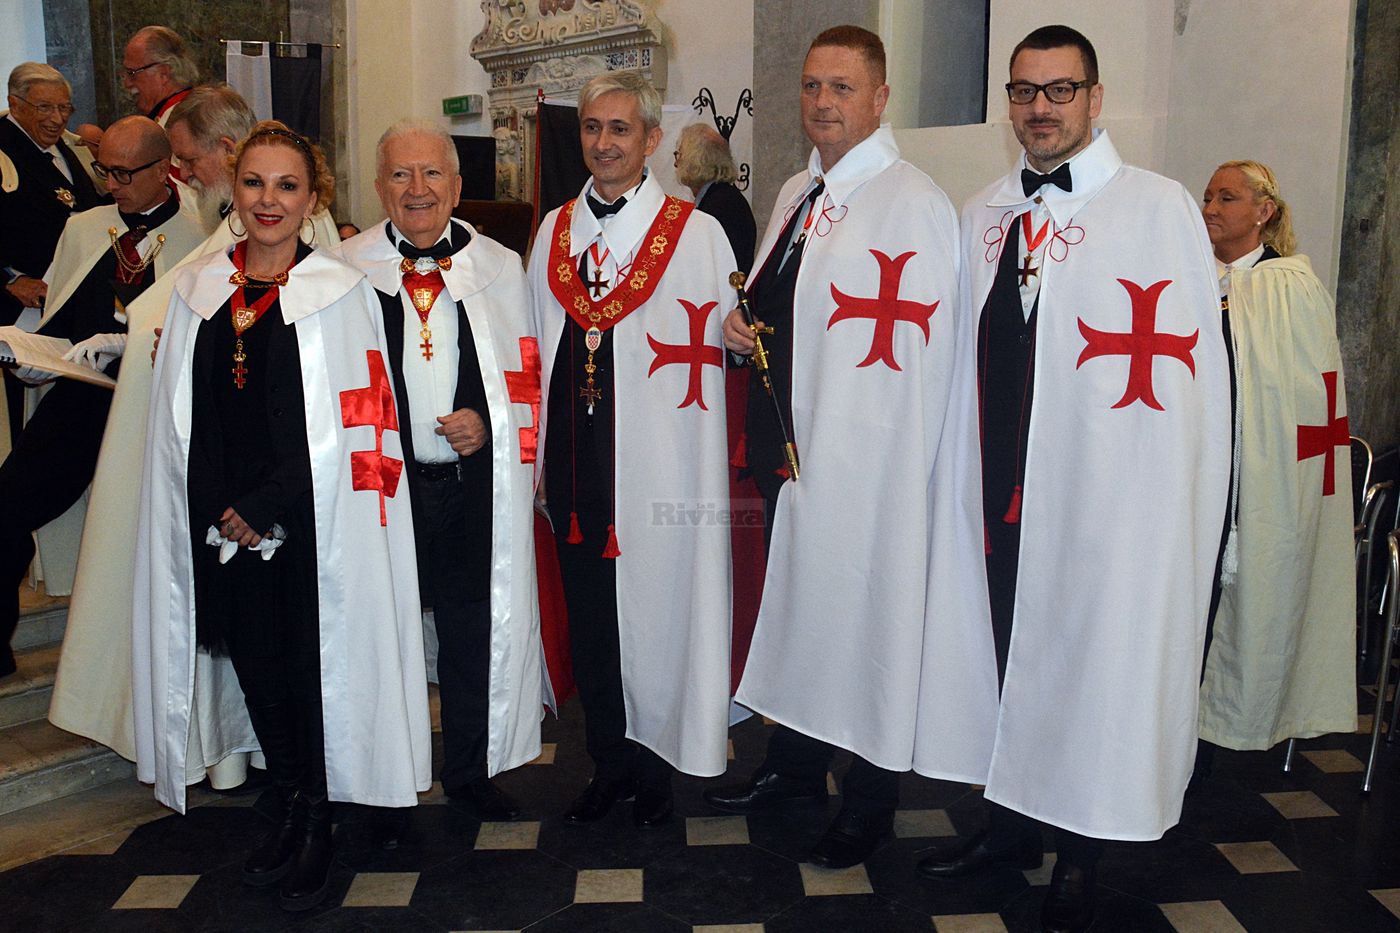 Cavalieri Templari ex chiesa San Francesco Ventimiglia 1 dicembre 2018